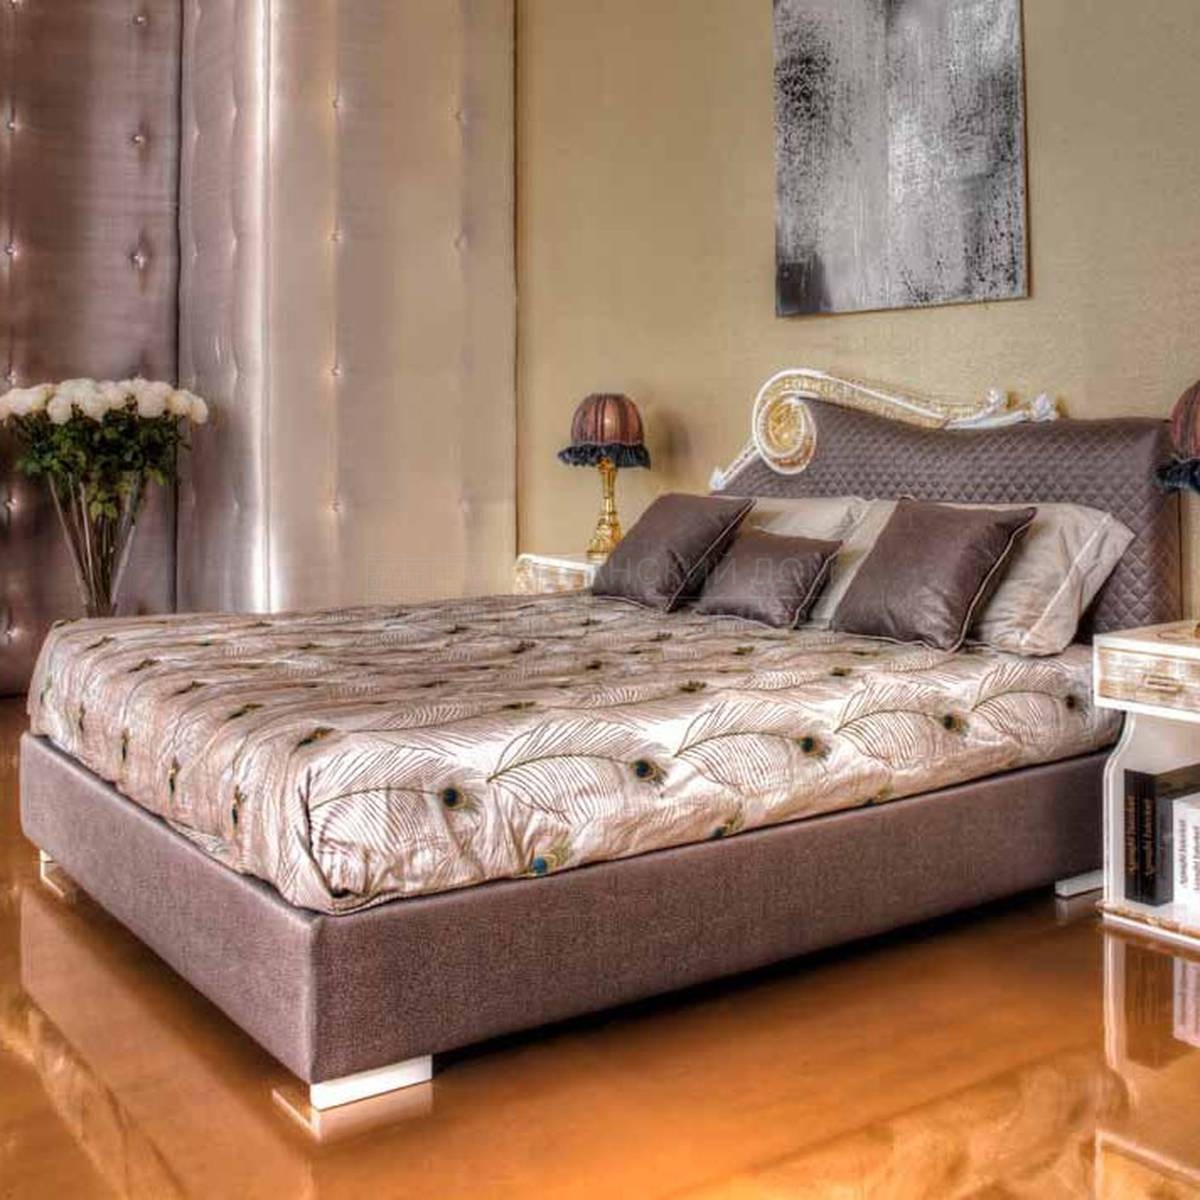 Двуспальная кровать AID 022 01 Sirio/bed из Италии фабрики ASNAGHI INTERIORS